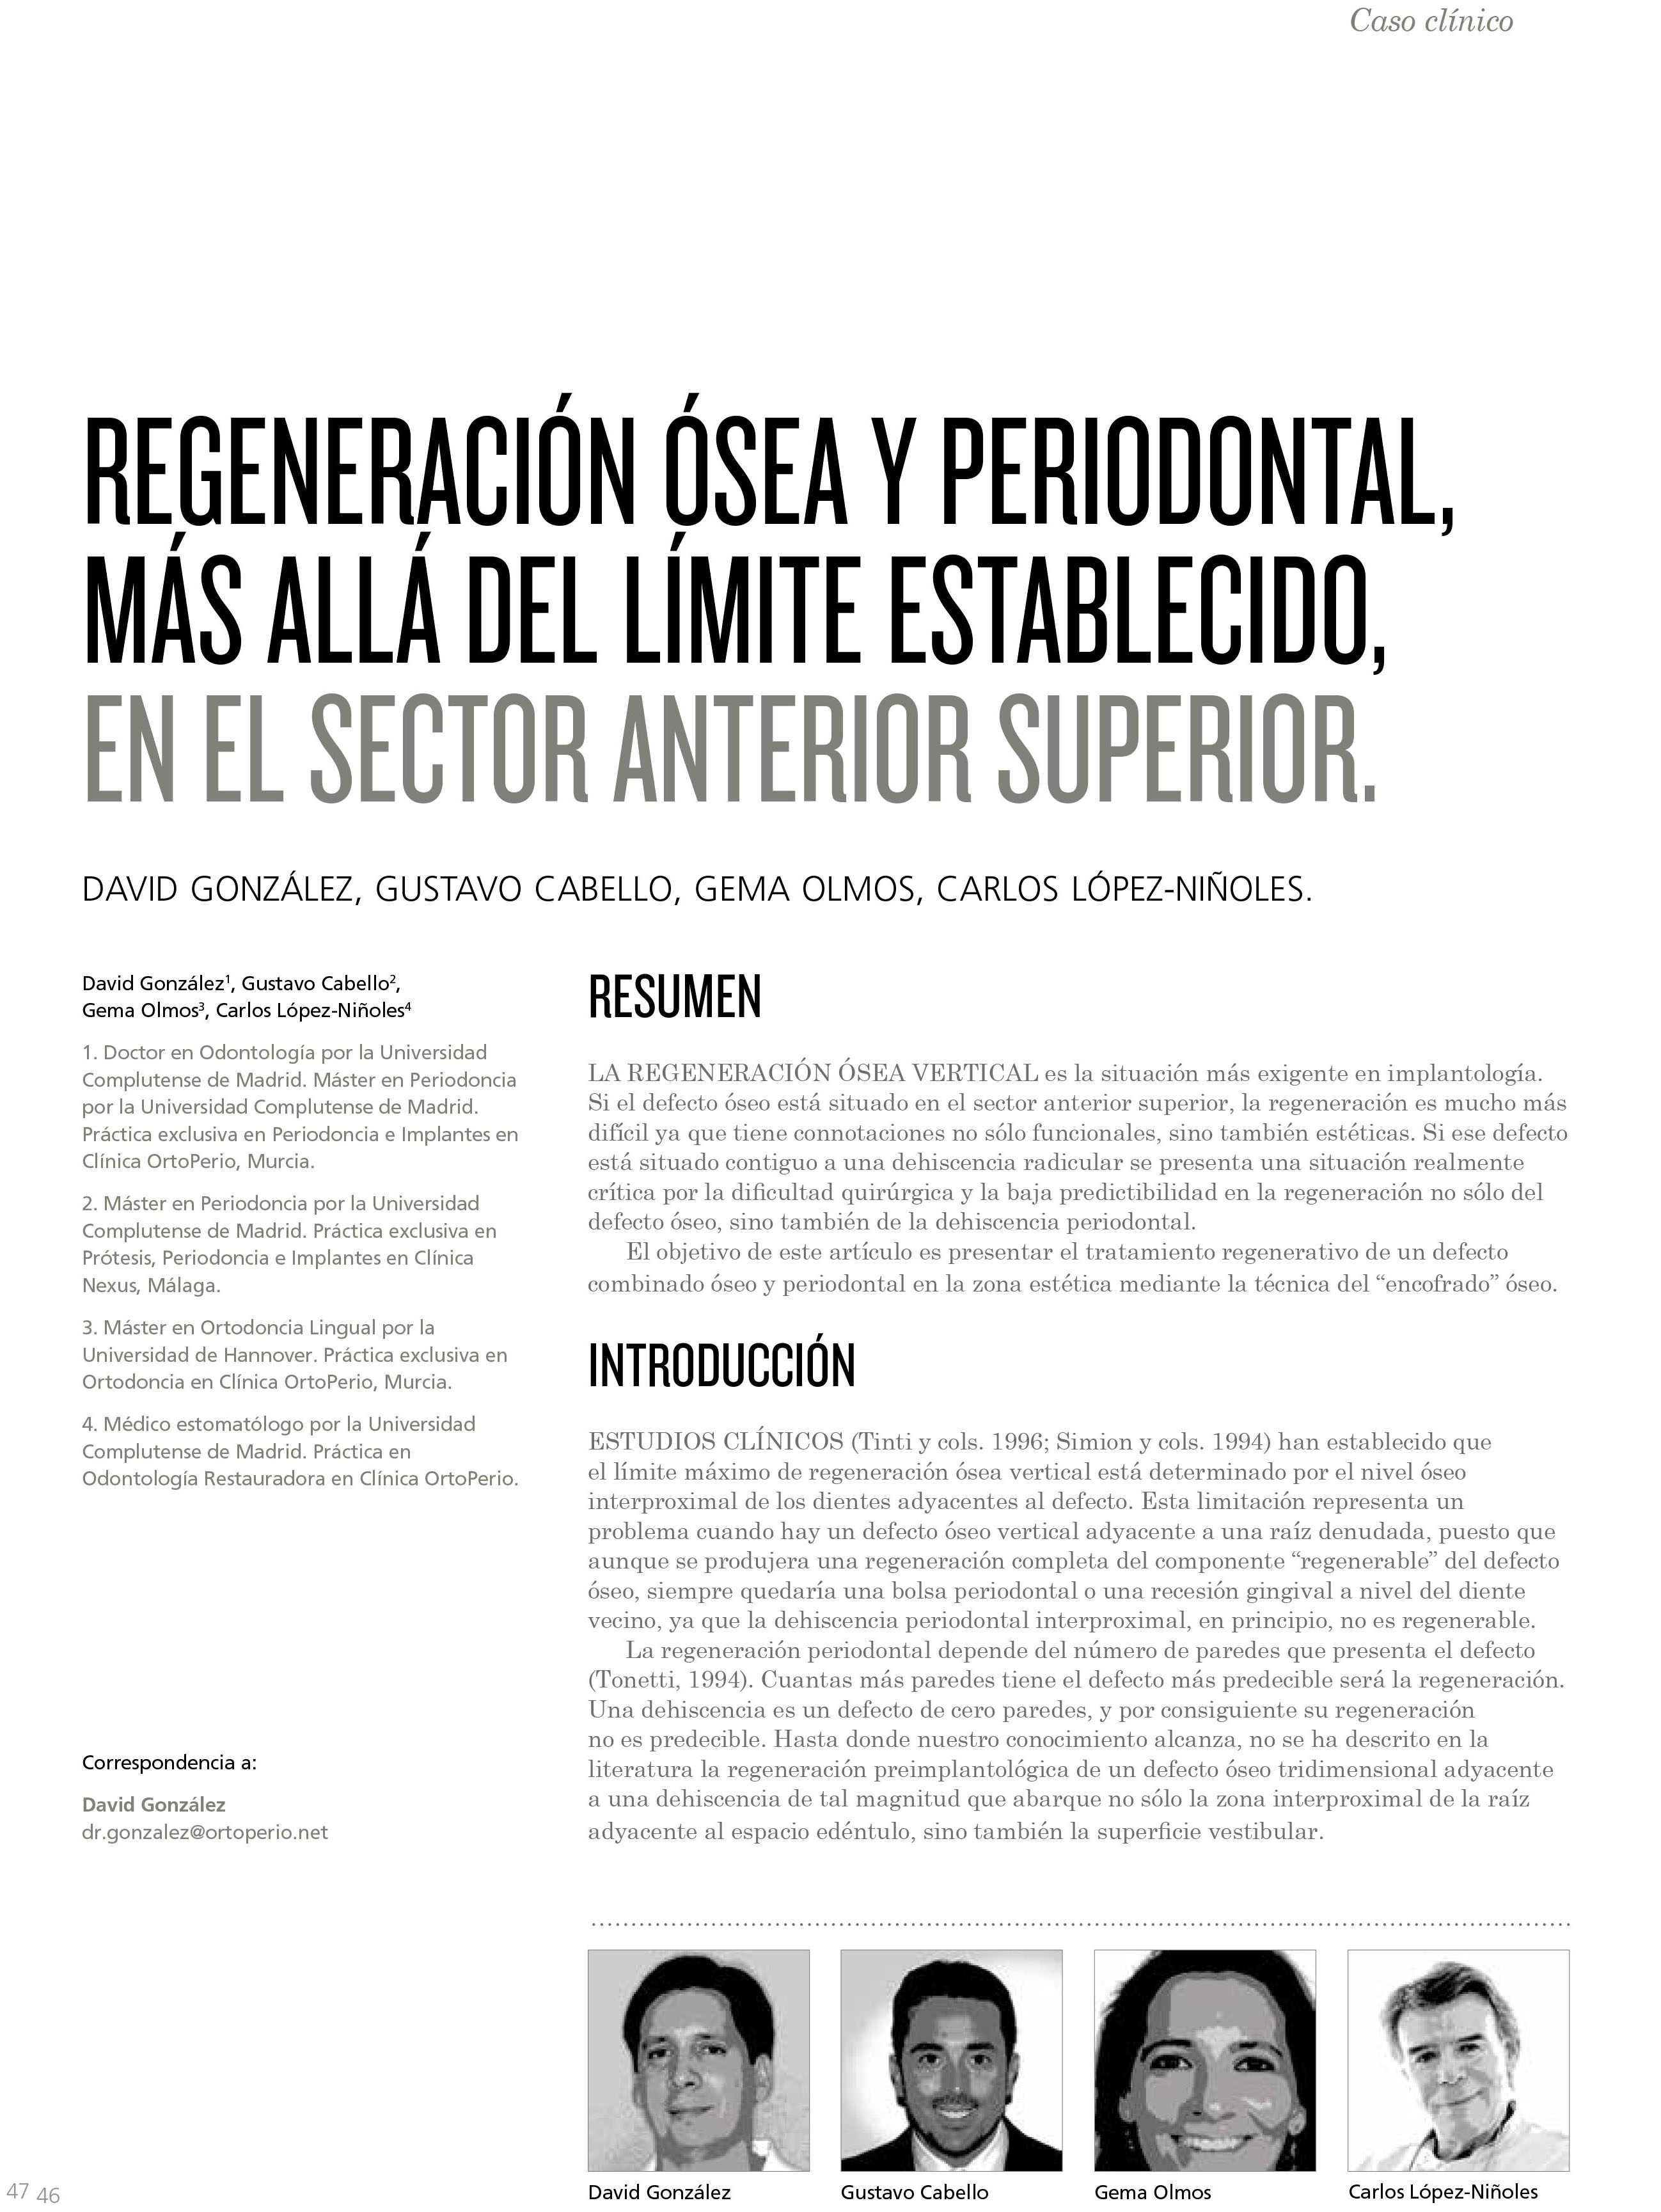 Nueva Publicación del Dr. David González y cols. en la revista de la Sociedad Española de Periodoncia y Osteointegración 4